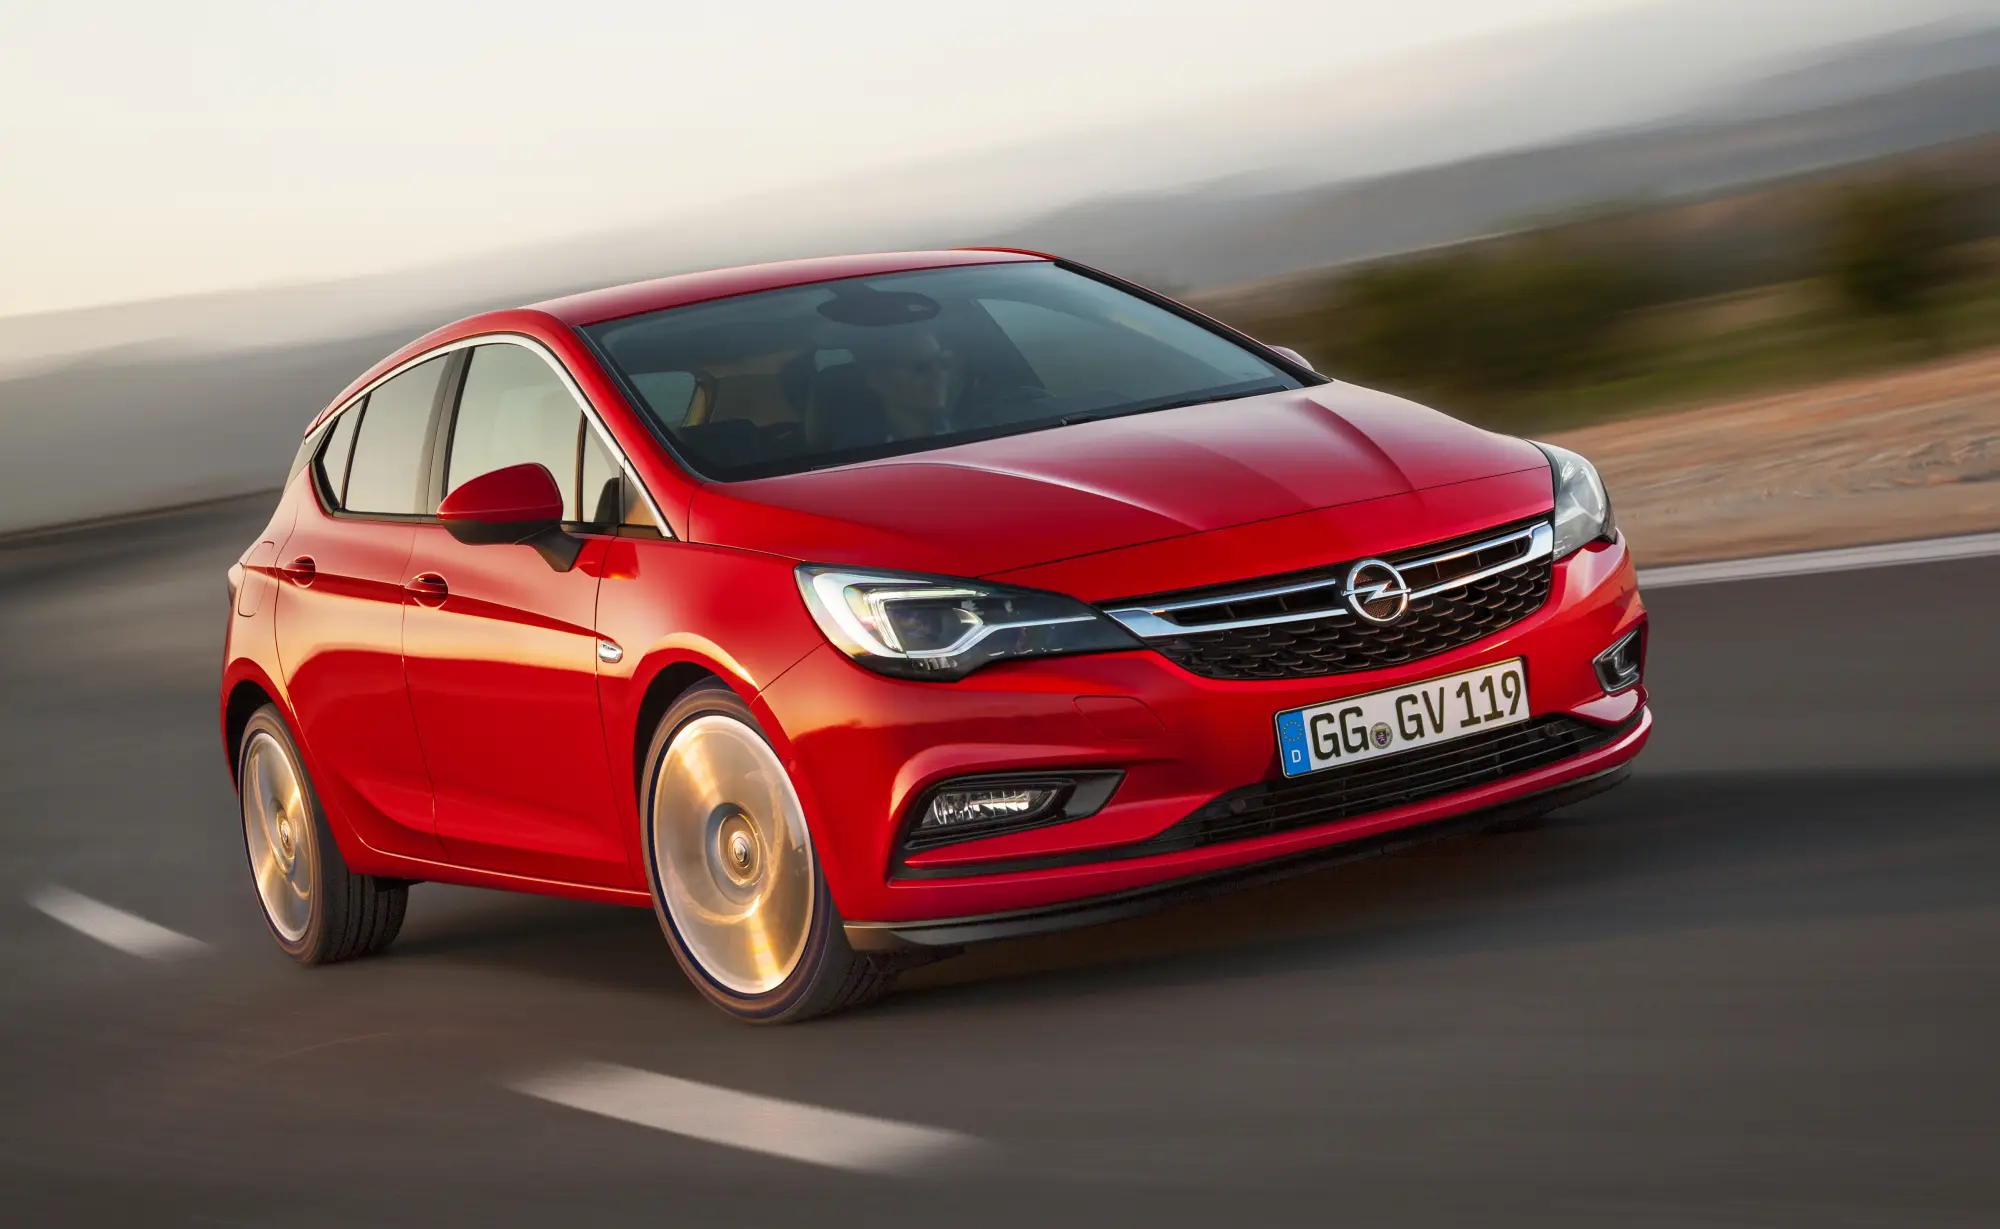 Nuova Opel Astra - 1.4 ECOTEC turbo a iniezione diretta - 2